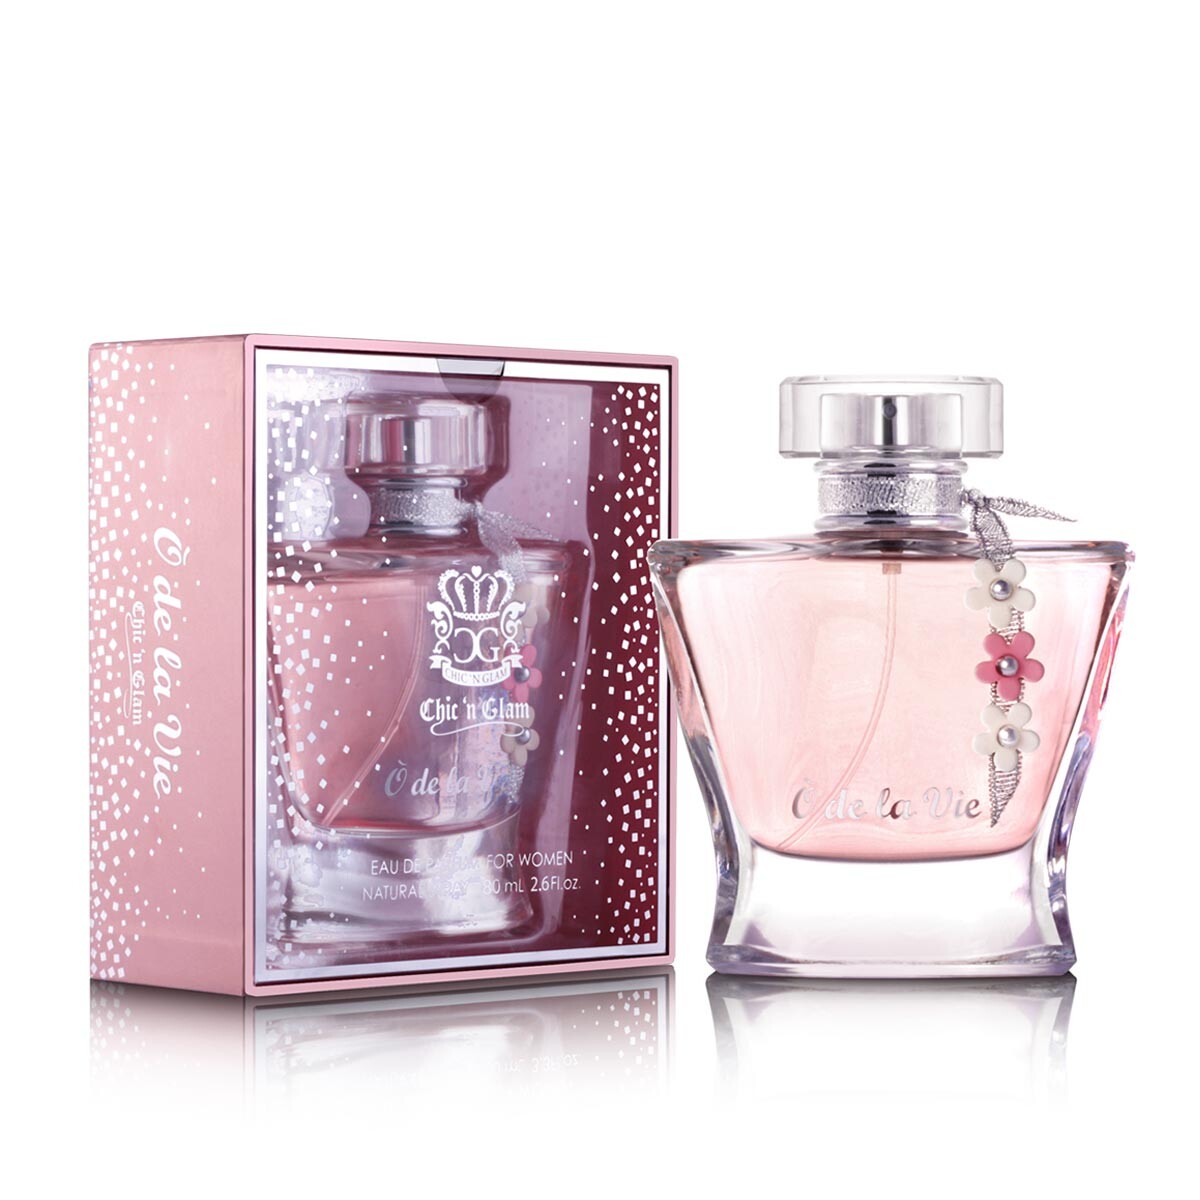 Perfume New Brand O De La Vie Edp 80 ml 